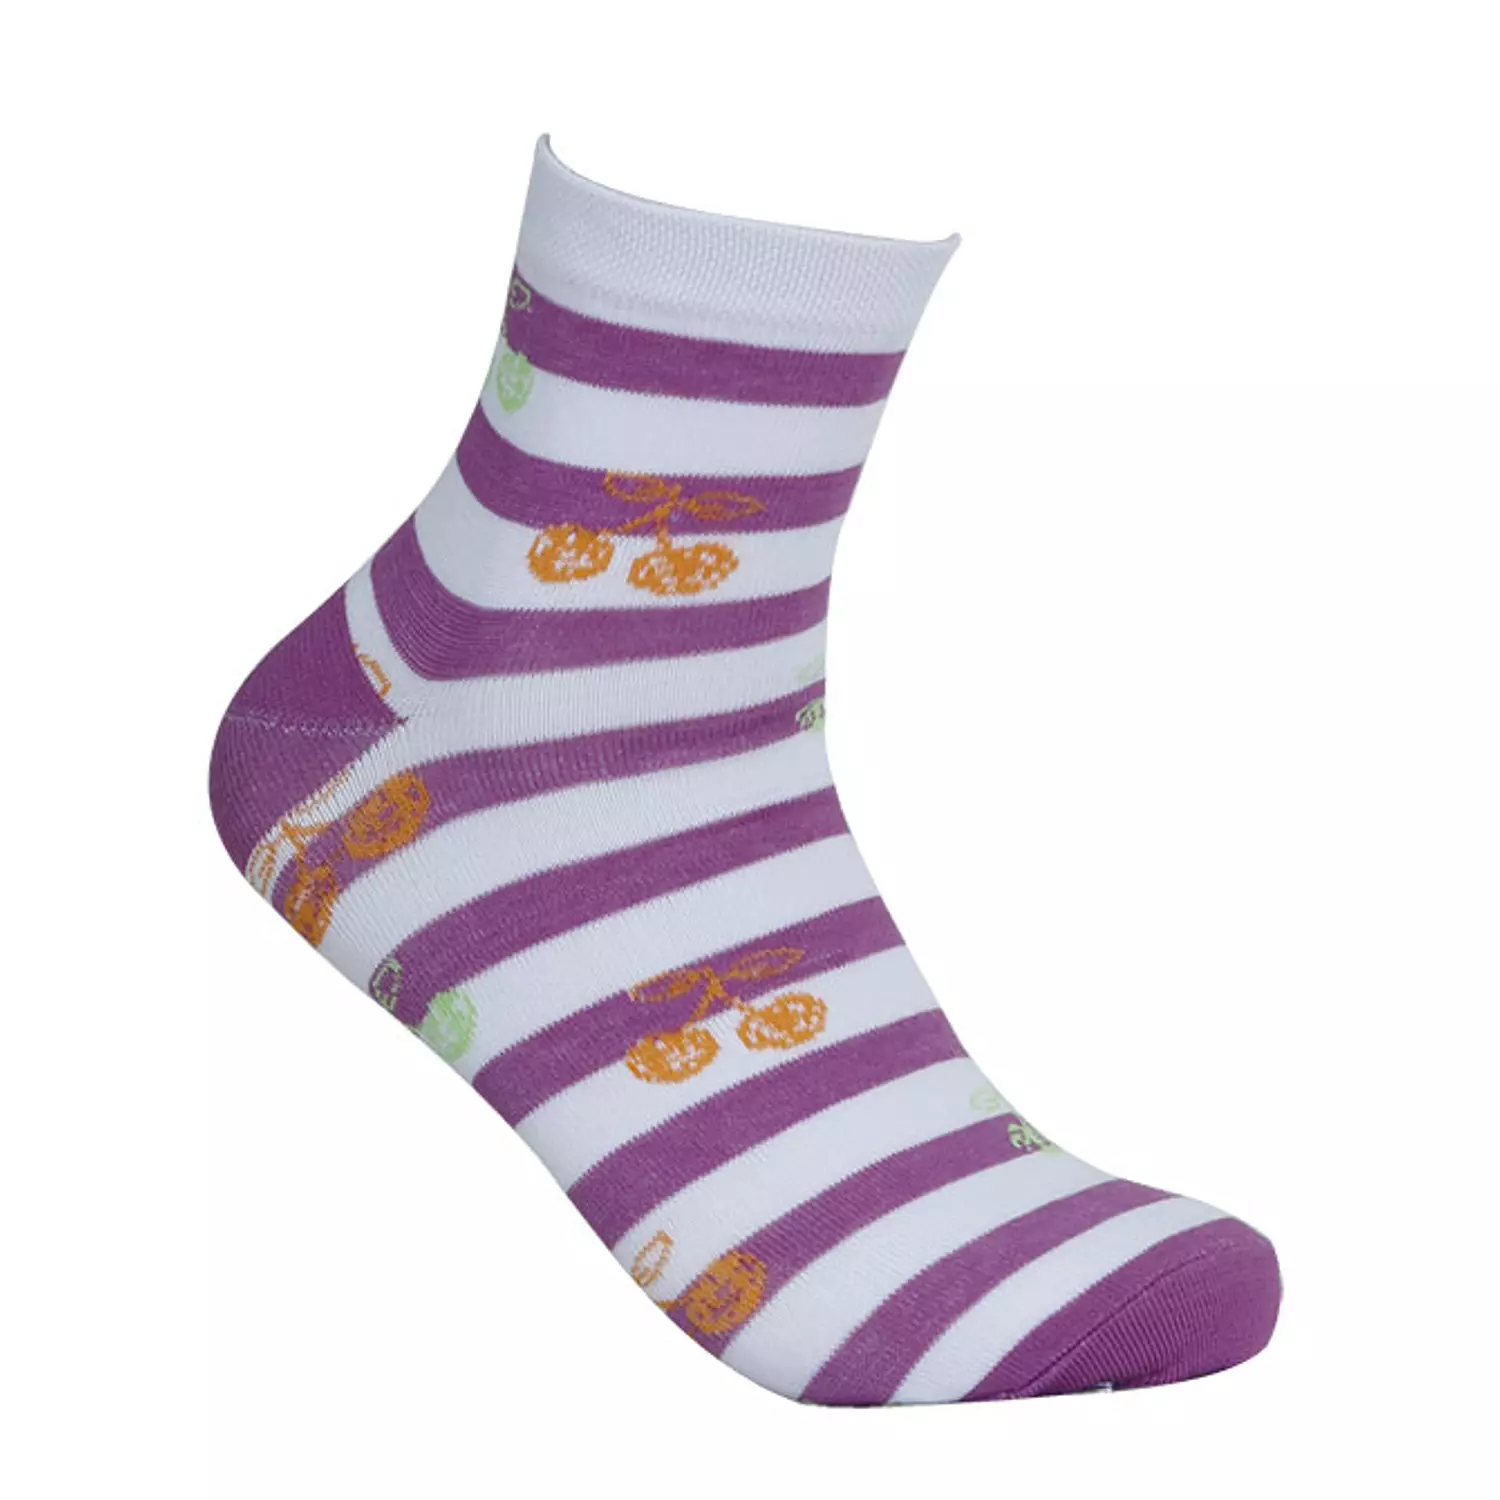  Viva Half Socks for women's  2